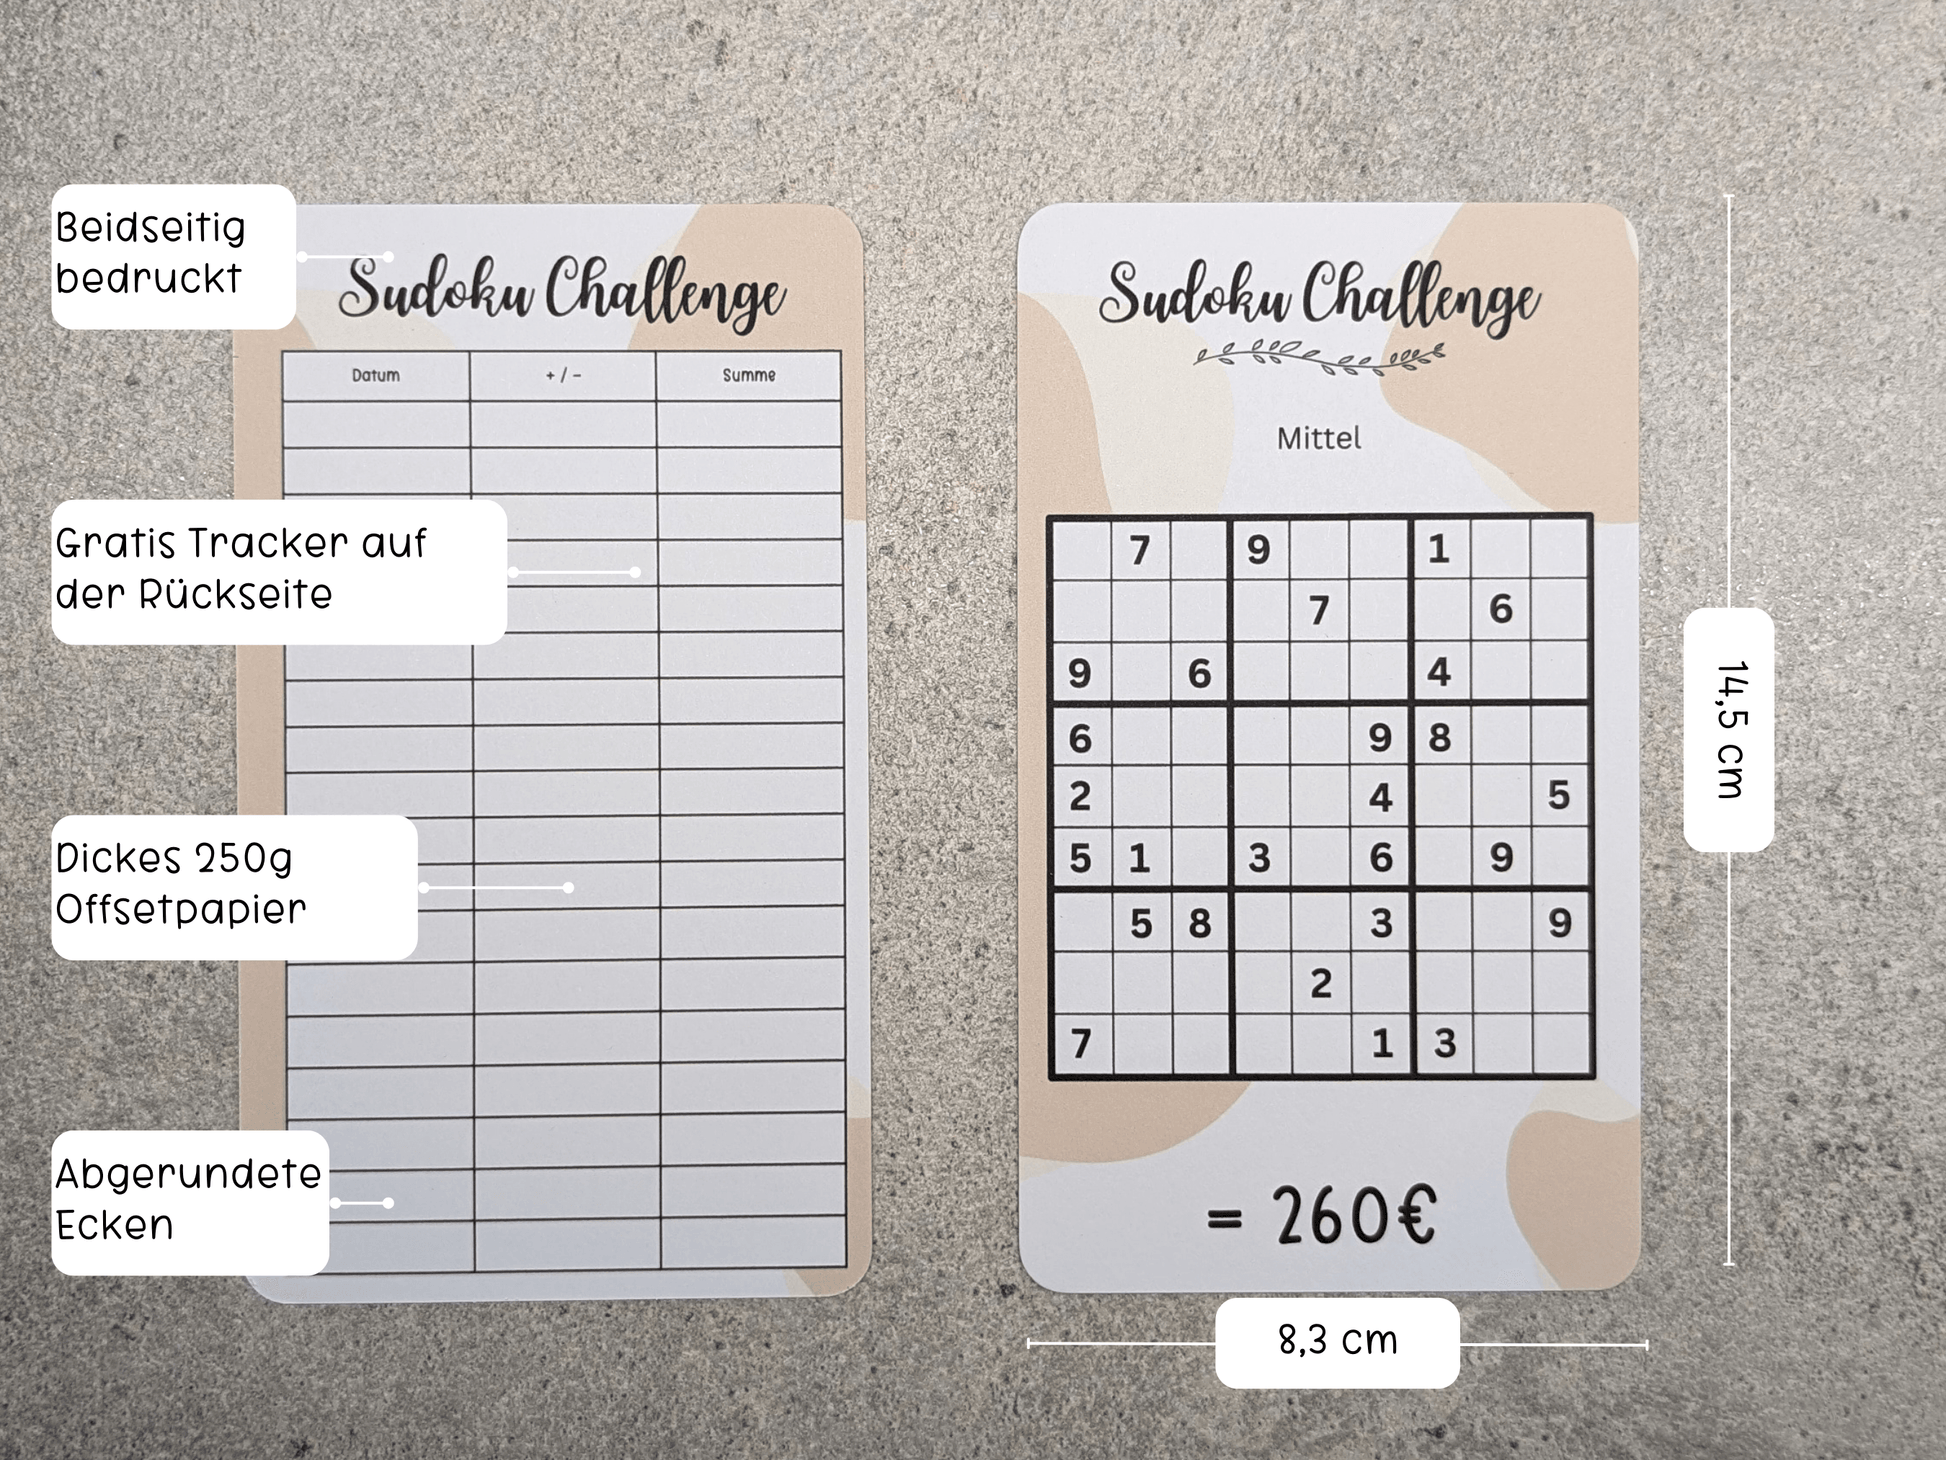 Sudoku Challenge - Budgethelden